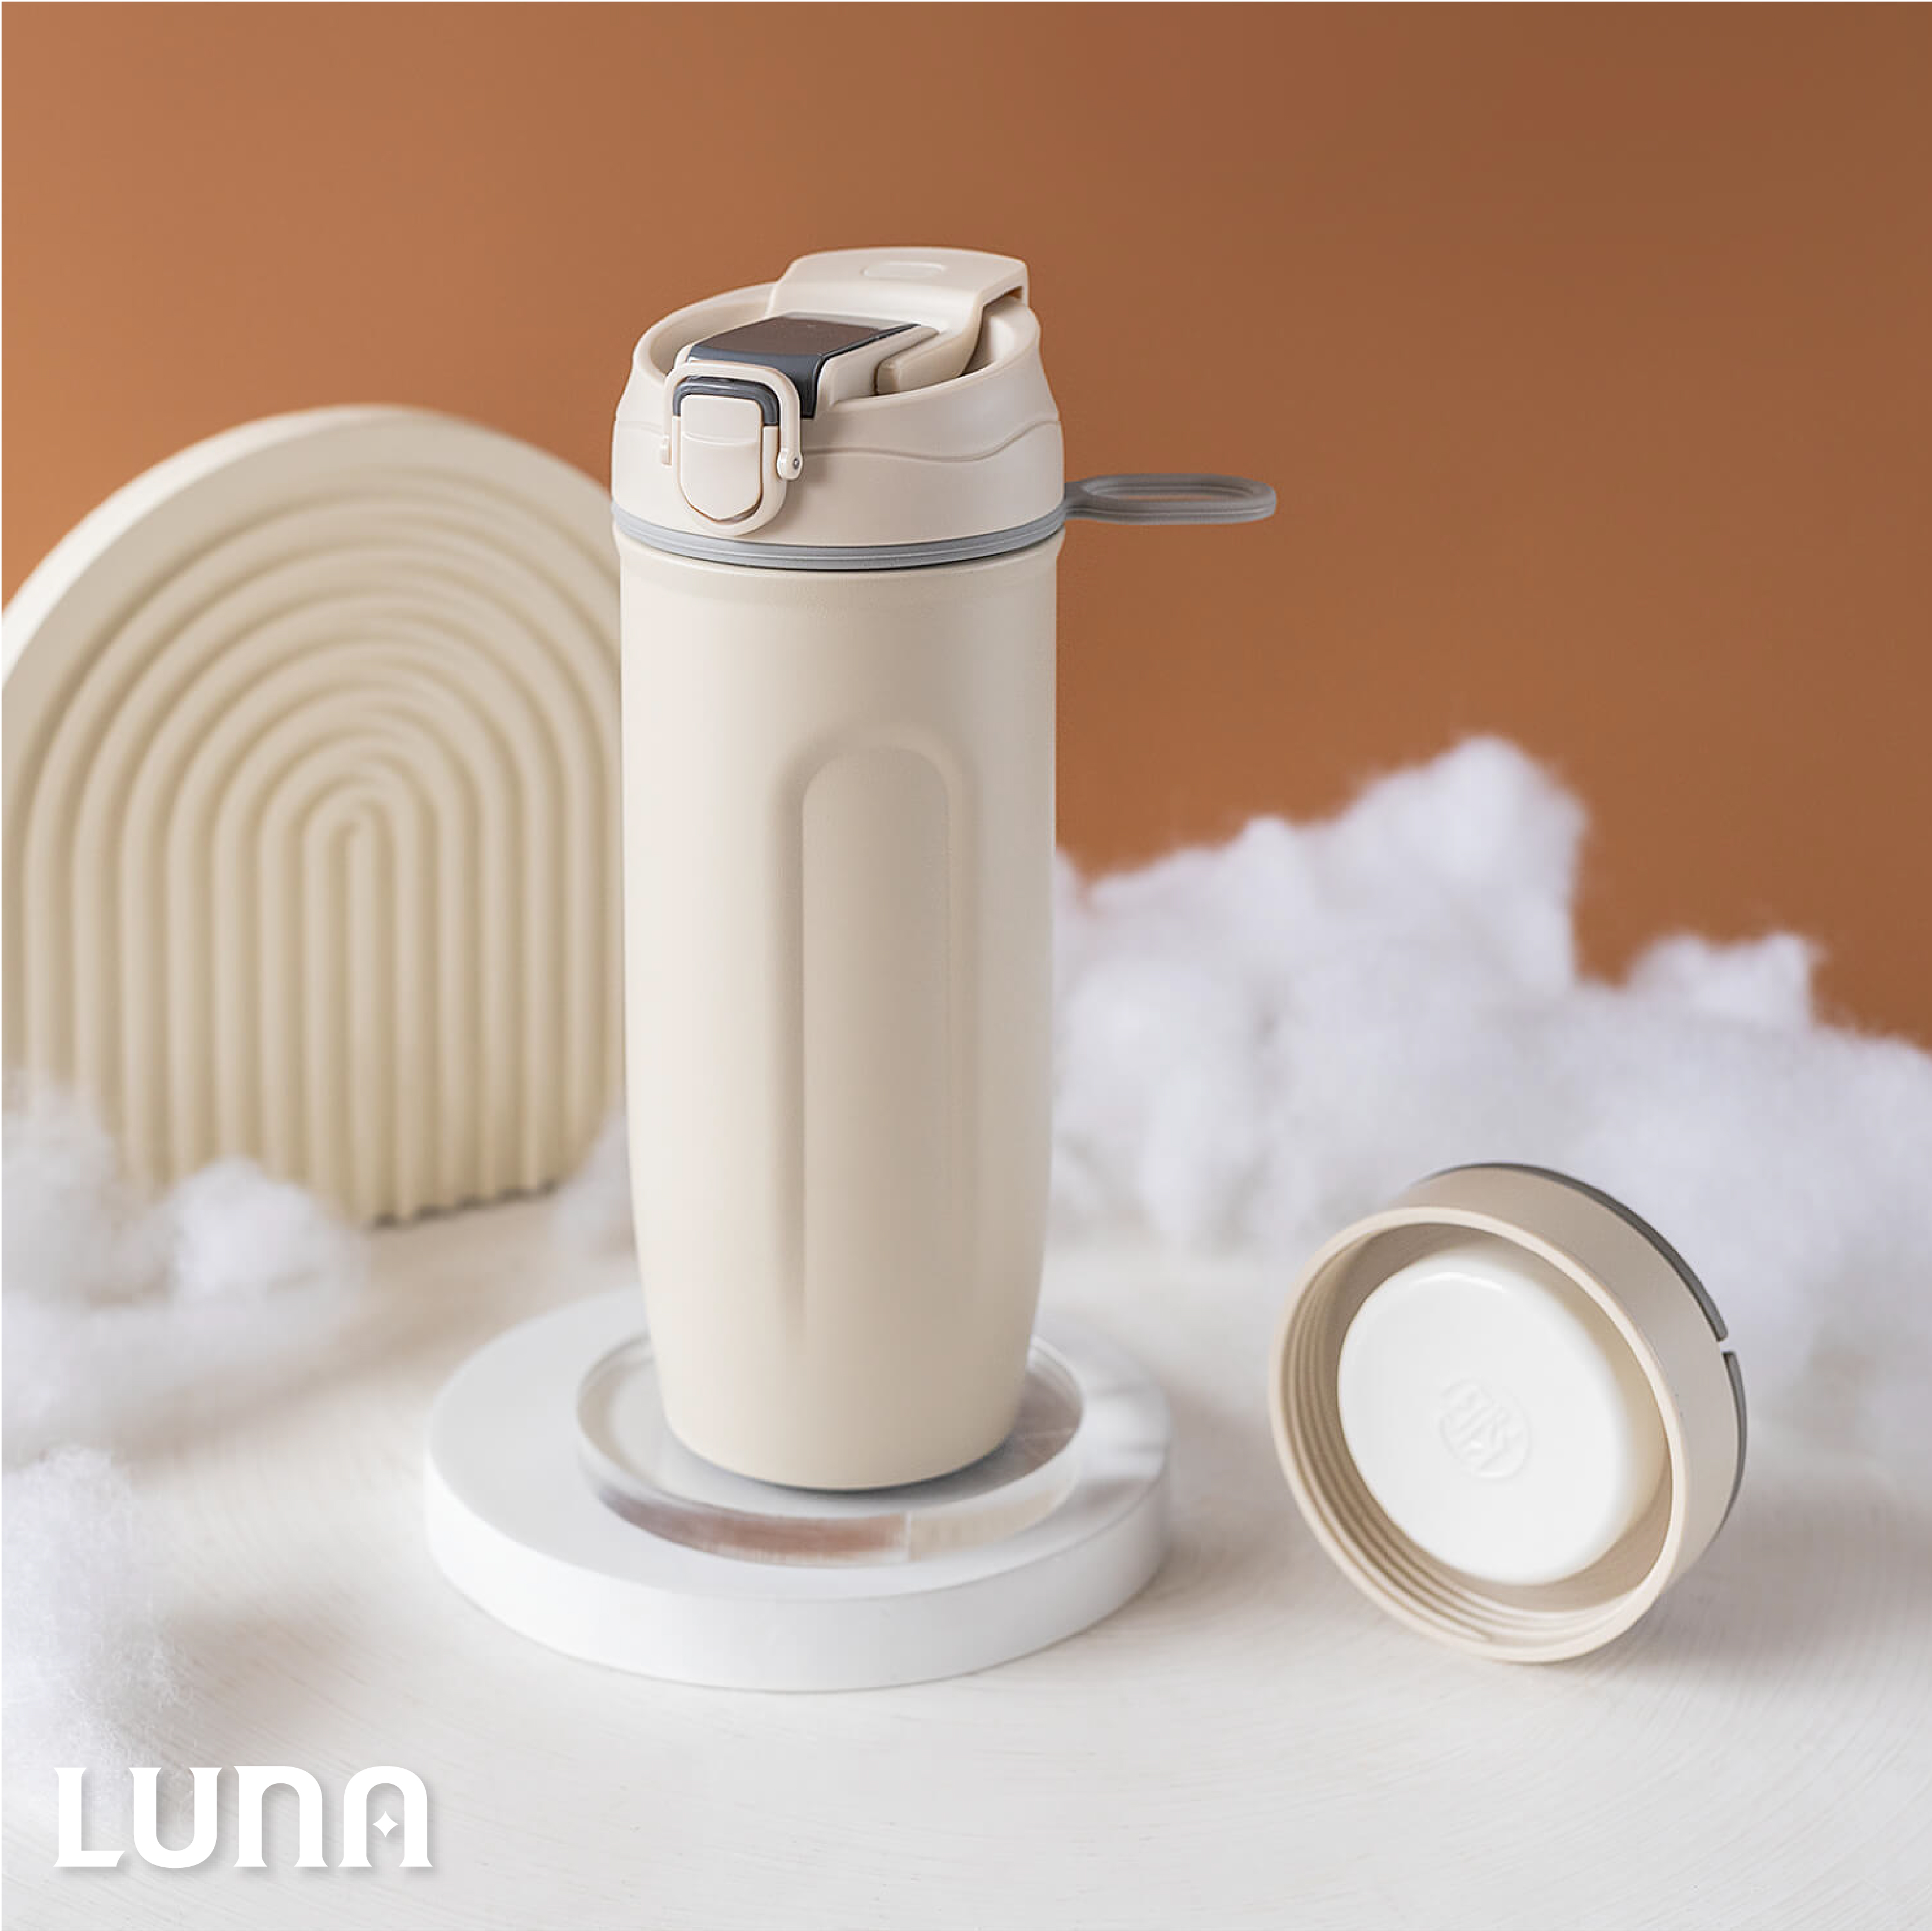 Luna Flask 520ml Single + Cap